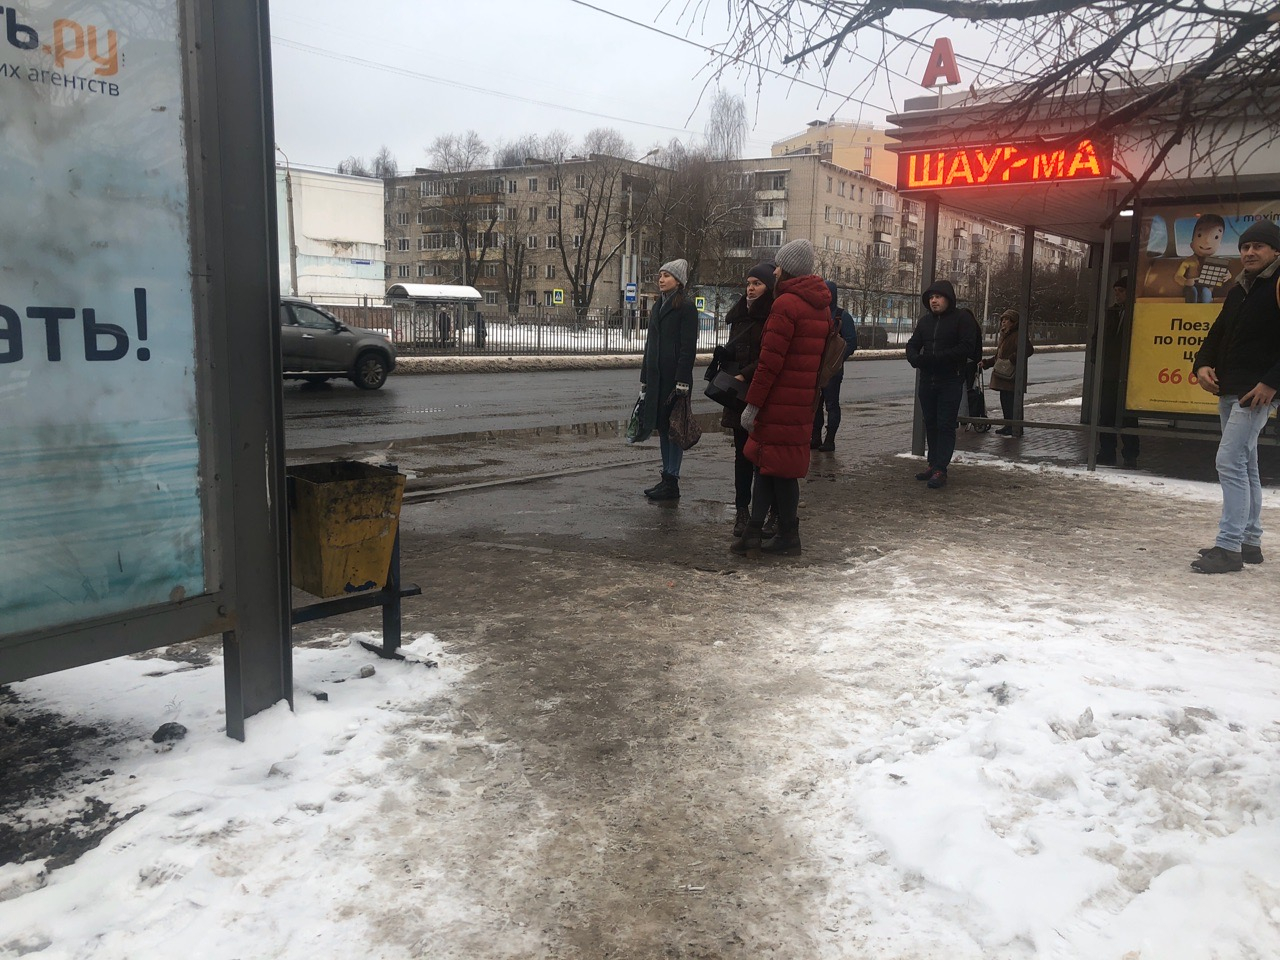 "Сломаю водителя": ярославцы жалуются на беспредел маршрутчиков